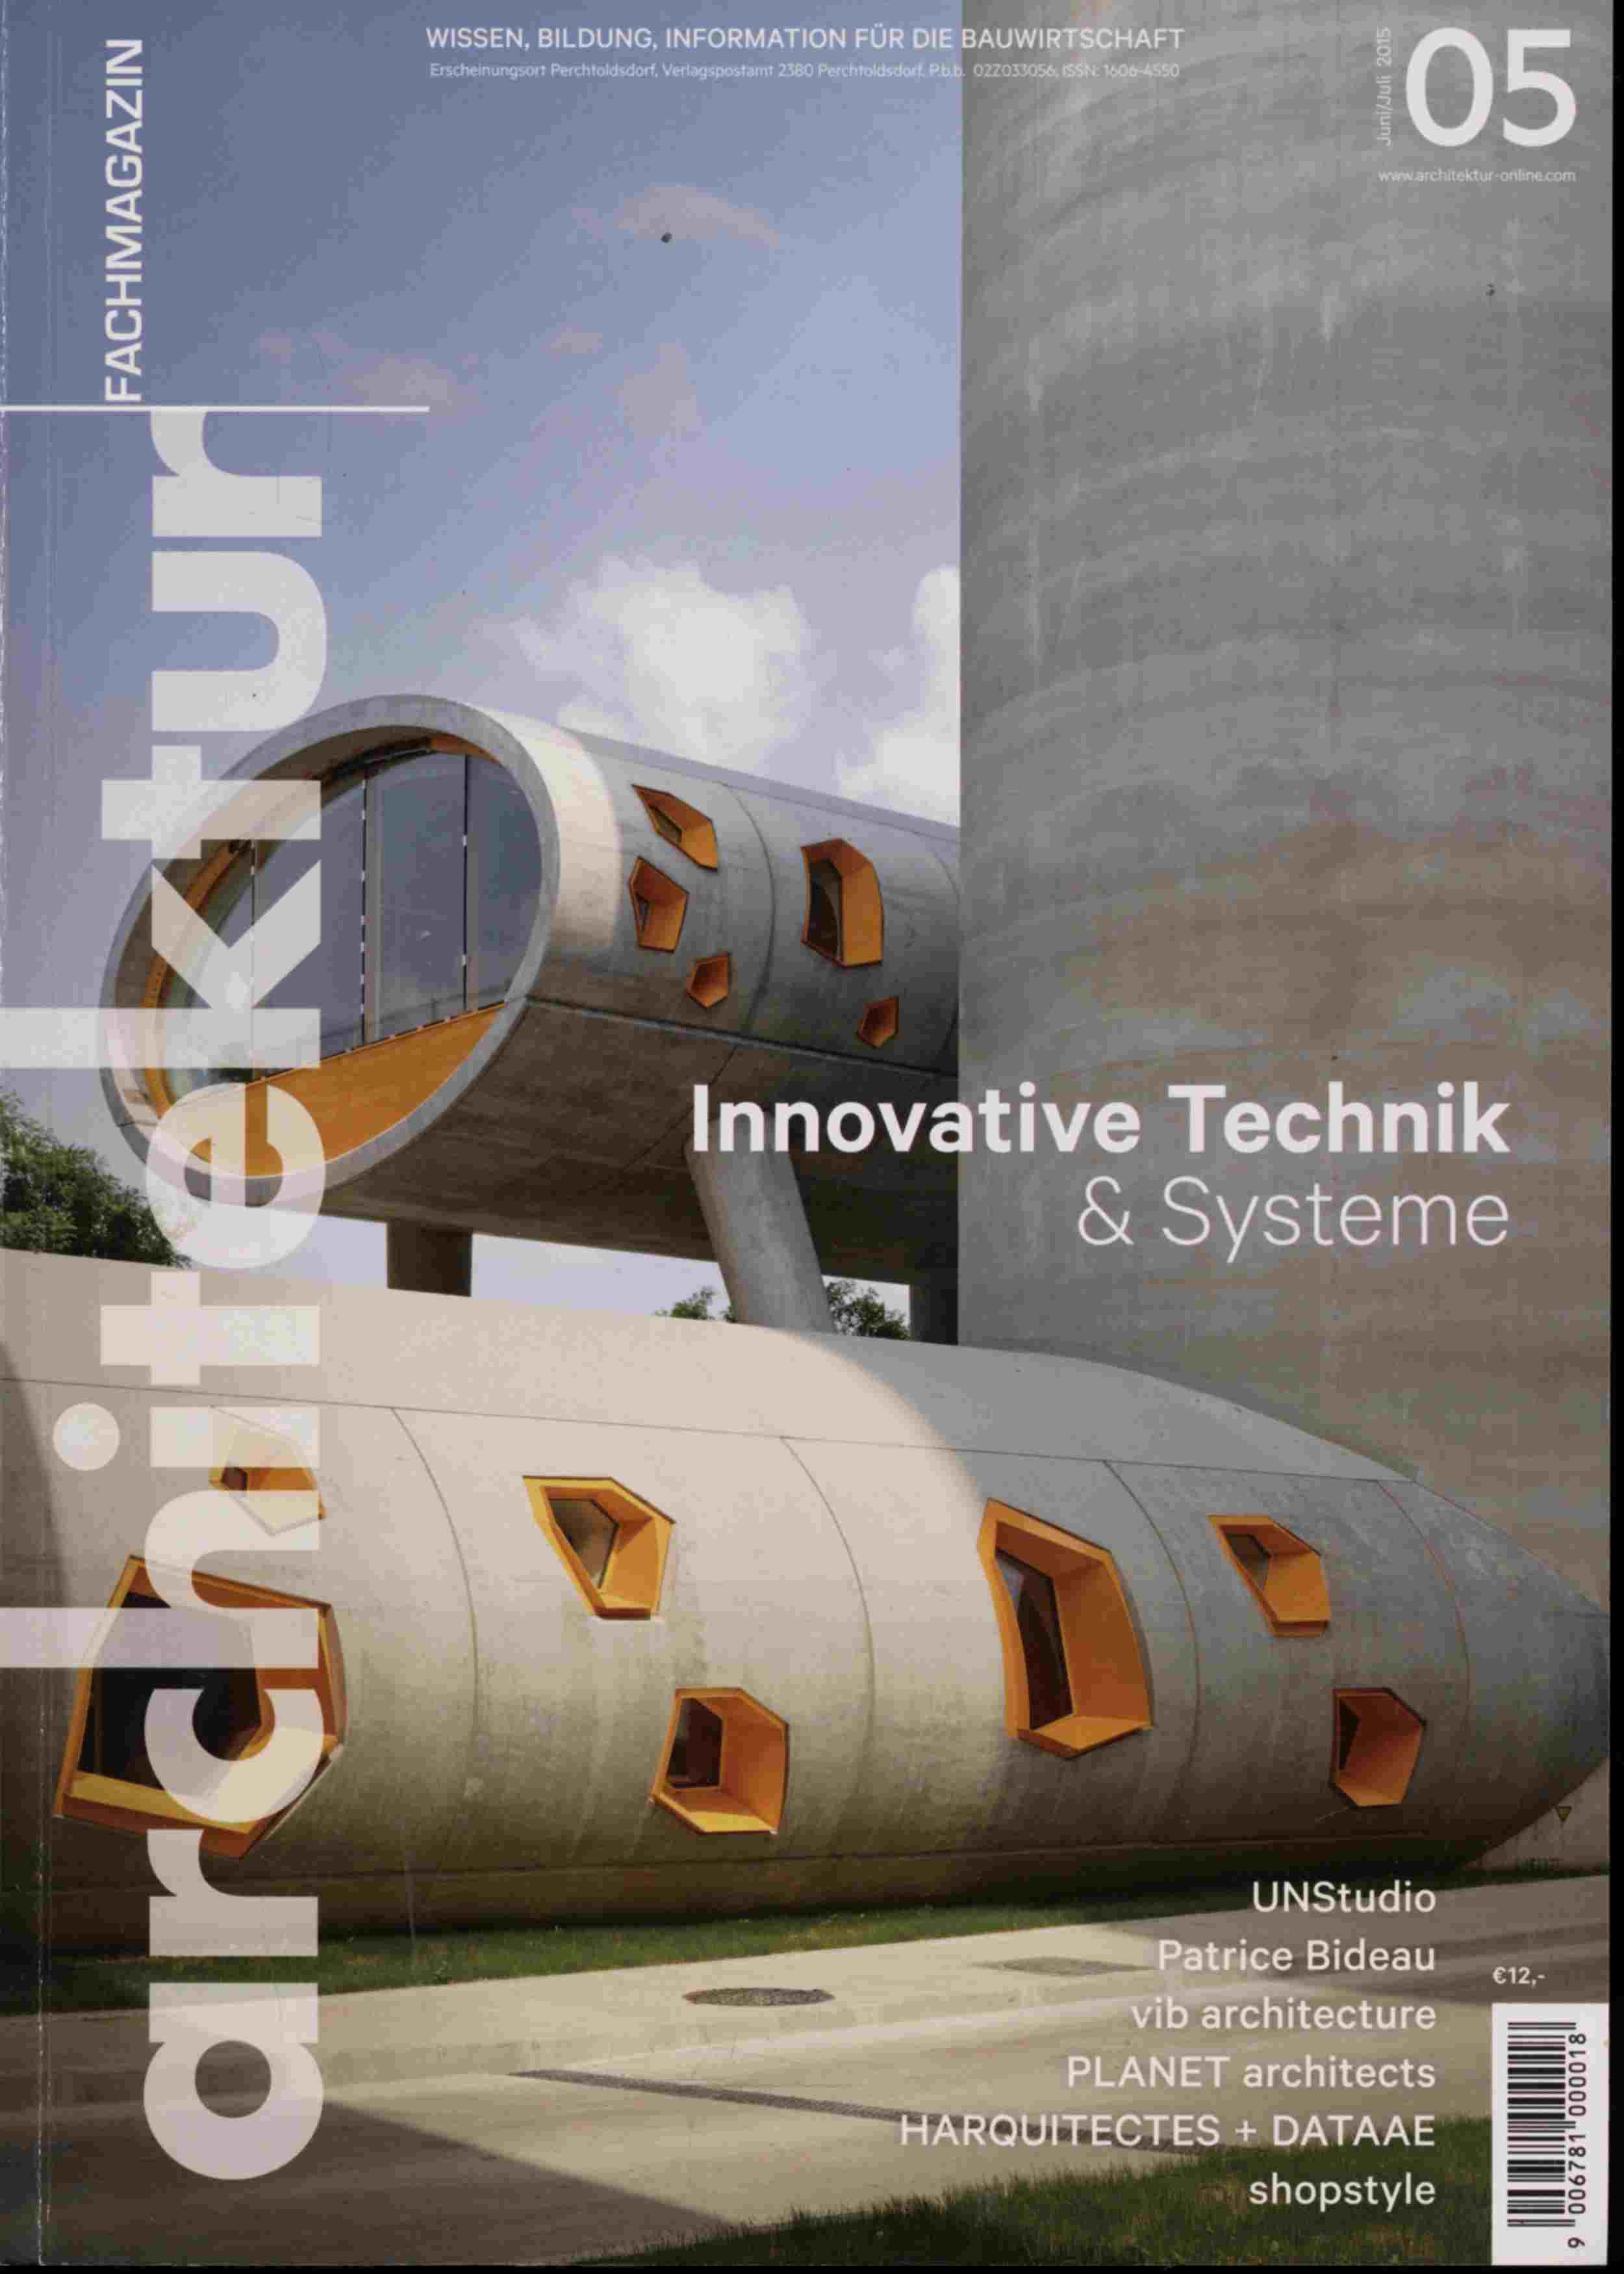 LASER, Walter (Chefred.)  architektur. fachmagazin. Wissen, Bildung, Information für die Bauwirtschaft Heft 05/2015 (Juni/Juli 2015): Innovative Technik & Systeme. 